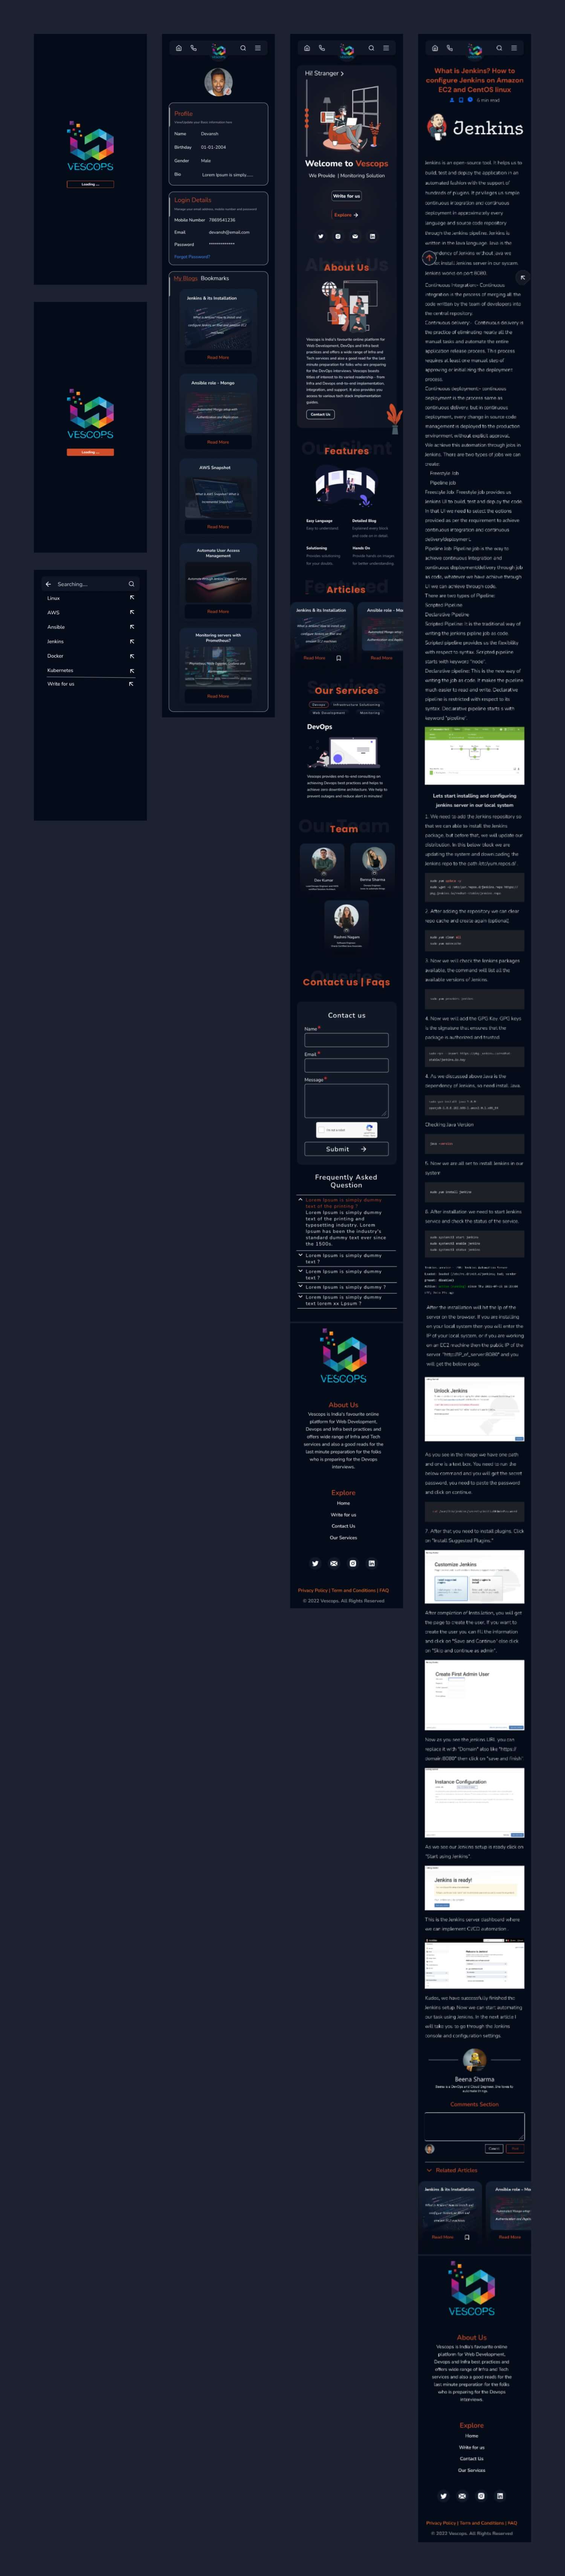 暗色系响应式企业官网落地页Landing Page WEB UI界面设计 .fig素材